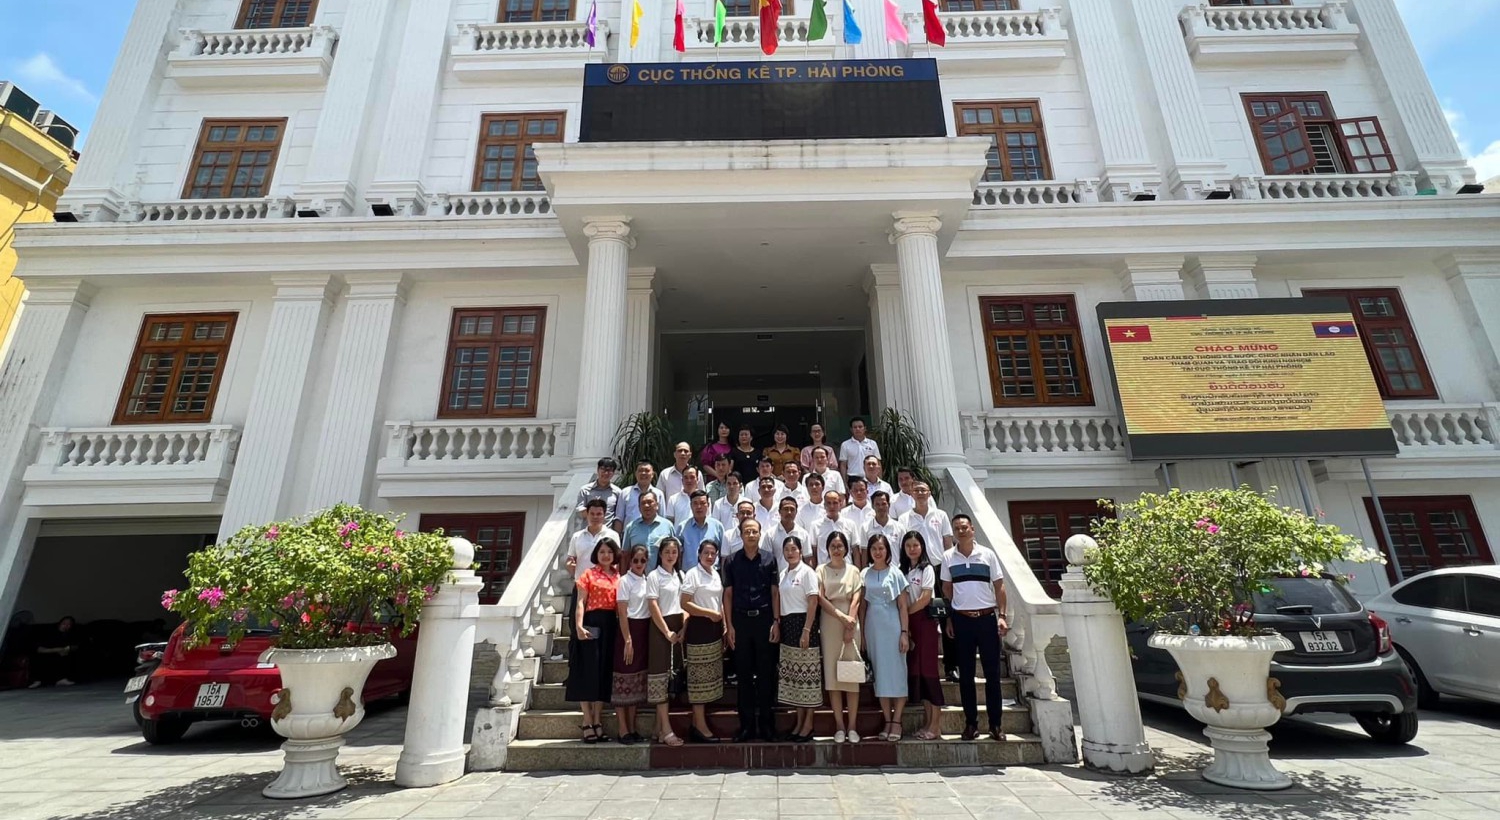 Đoàn cán bộ thống kê nước CHDC nhân dân Lào tham quan và trao đổi kinh nghiệm tại Cục Thống kê TP Hải Phòng